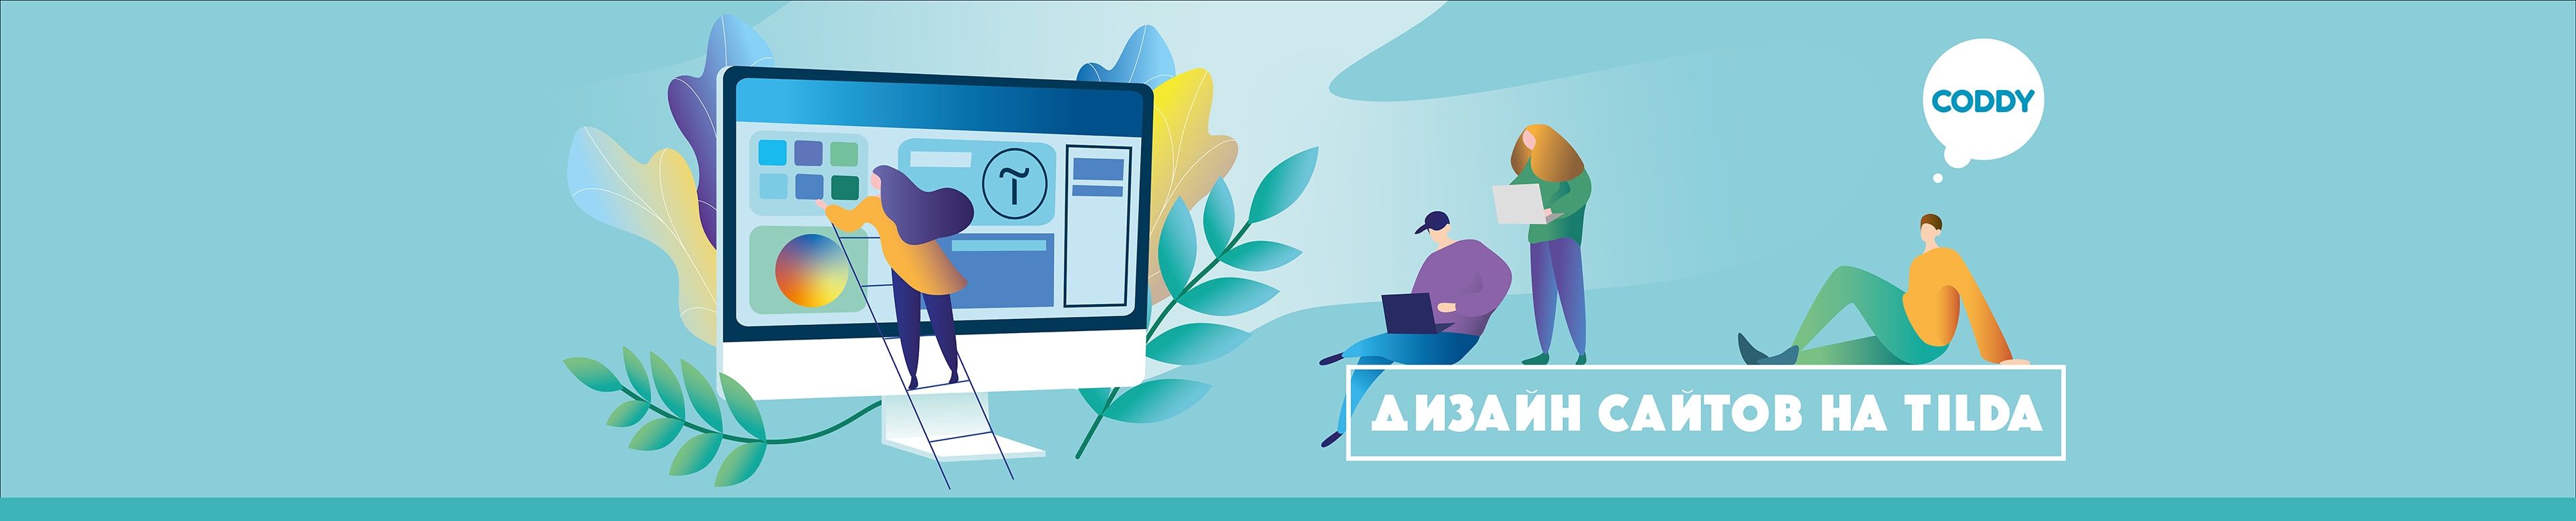 Школа создание сайтов продвижение и реклама сайтов москва